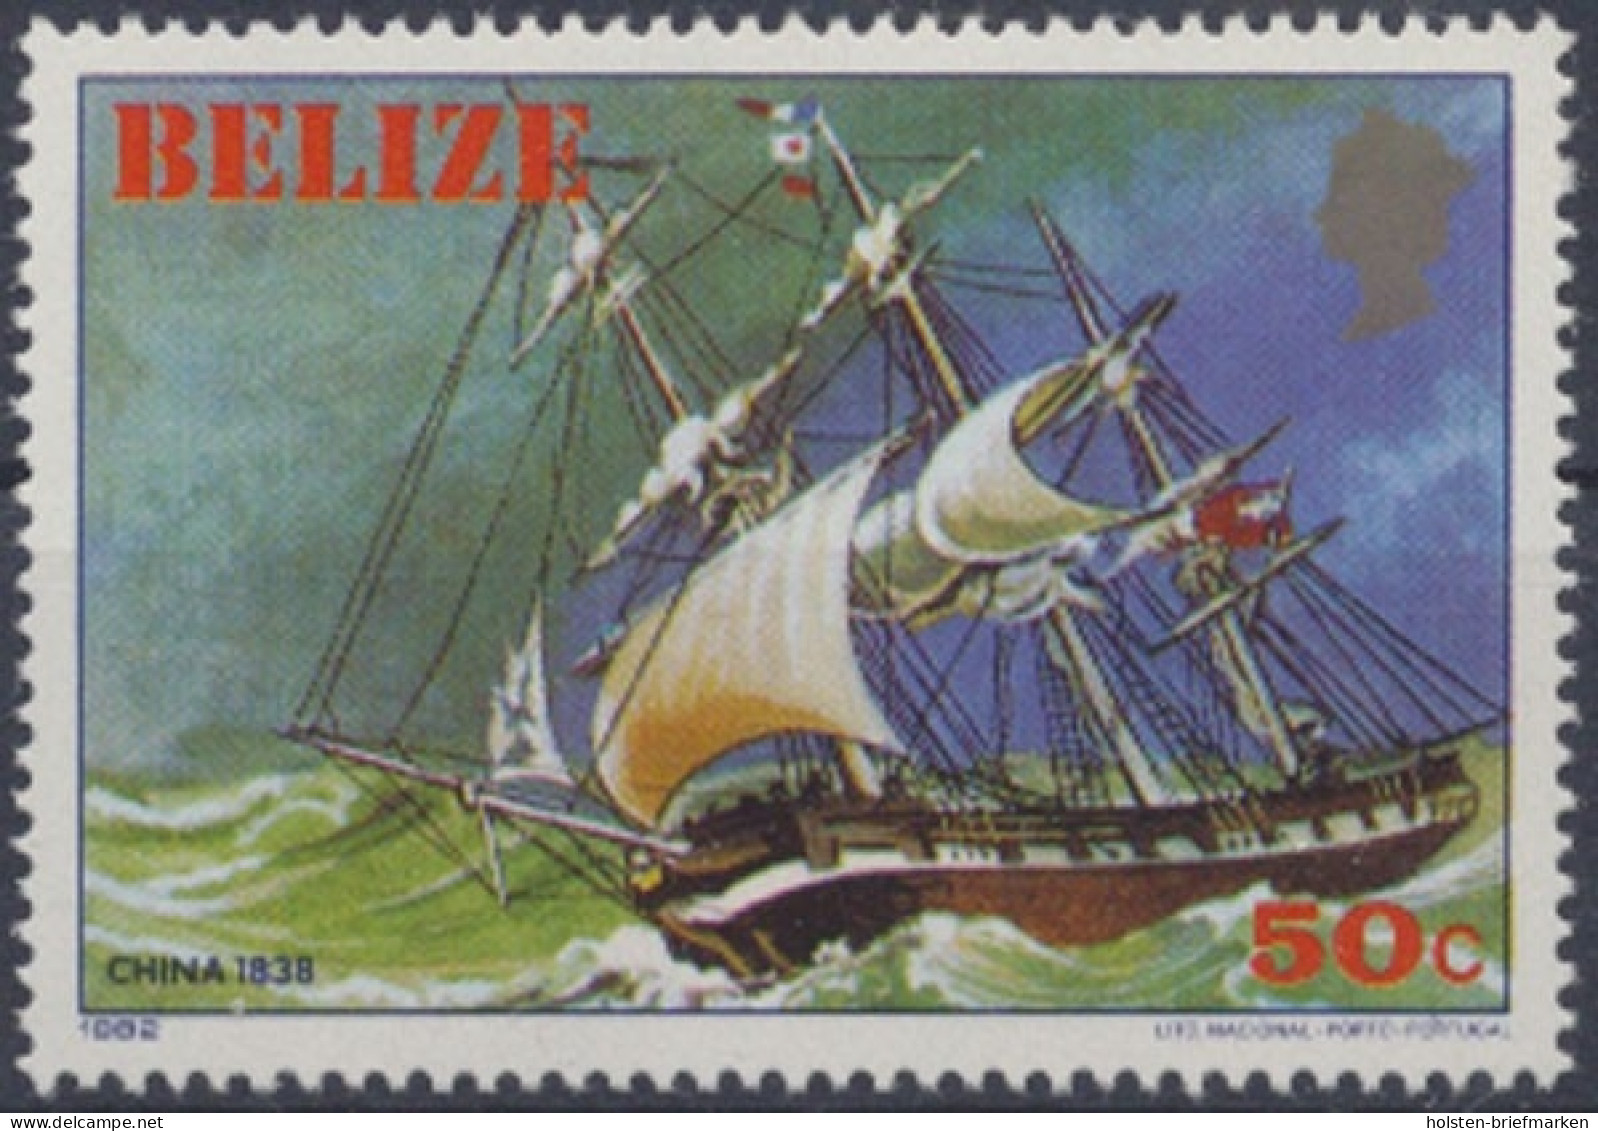 Belize, MiNr. 628, Postfrisch - Belize (1973-...)